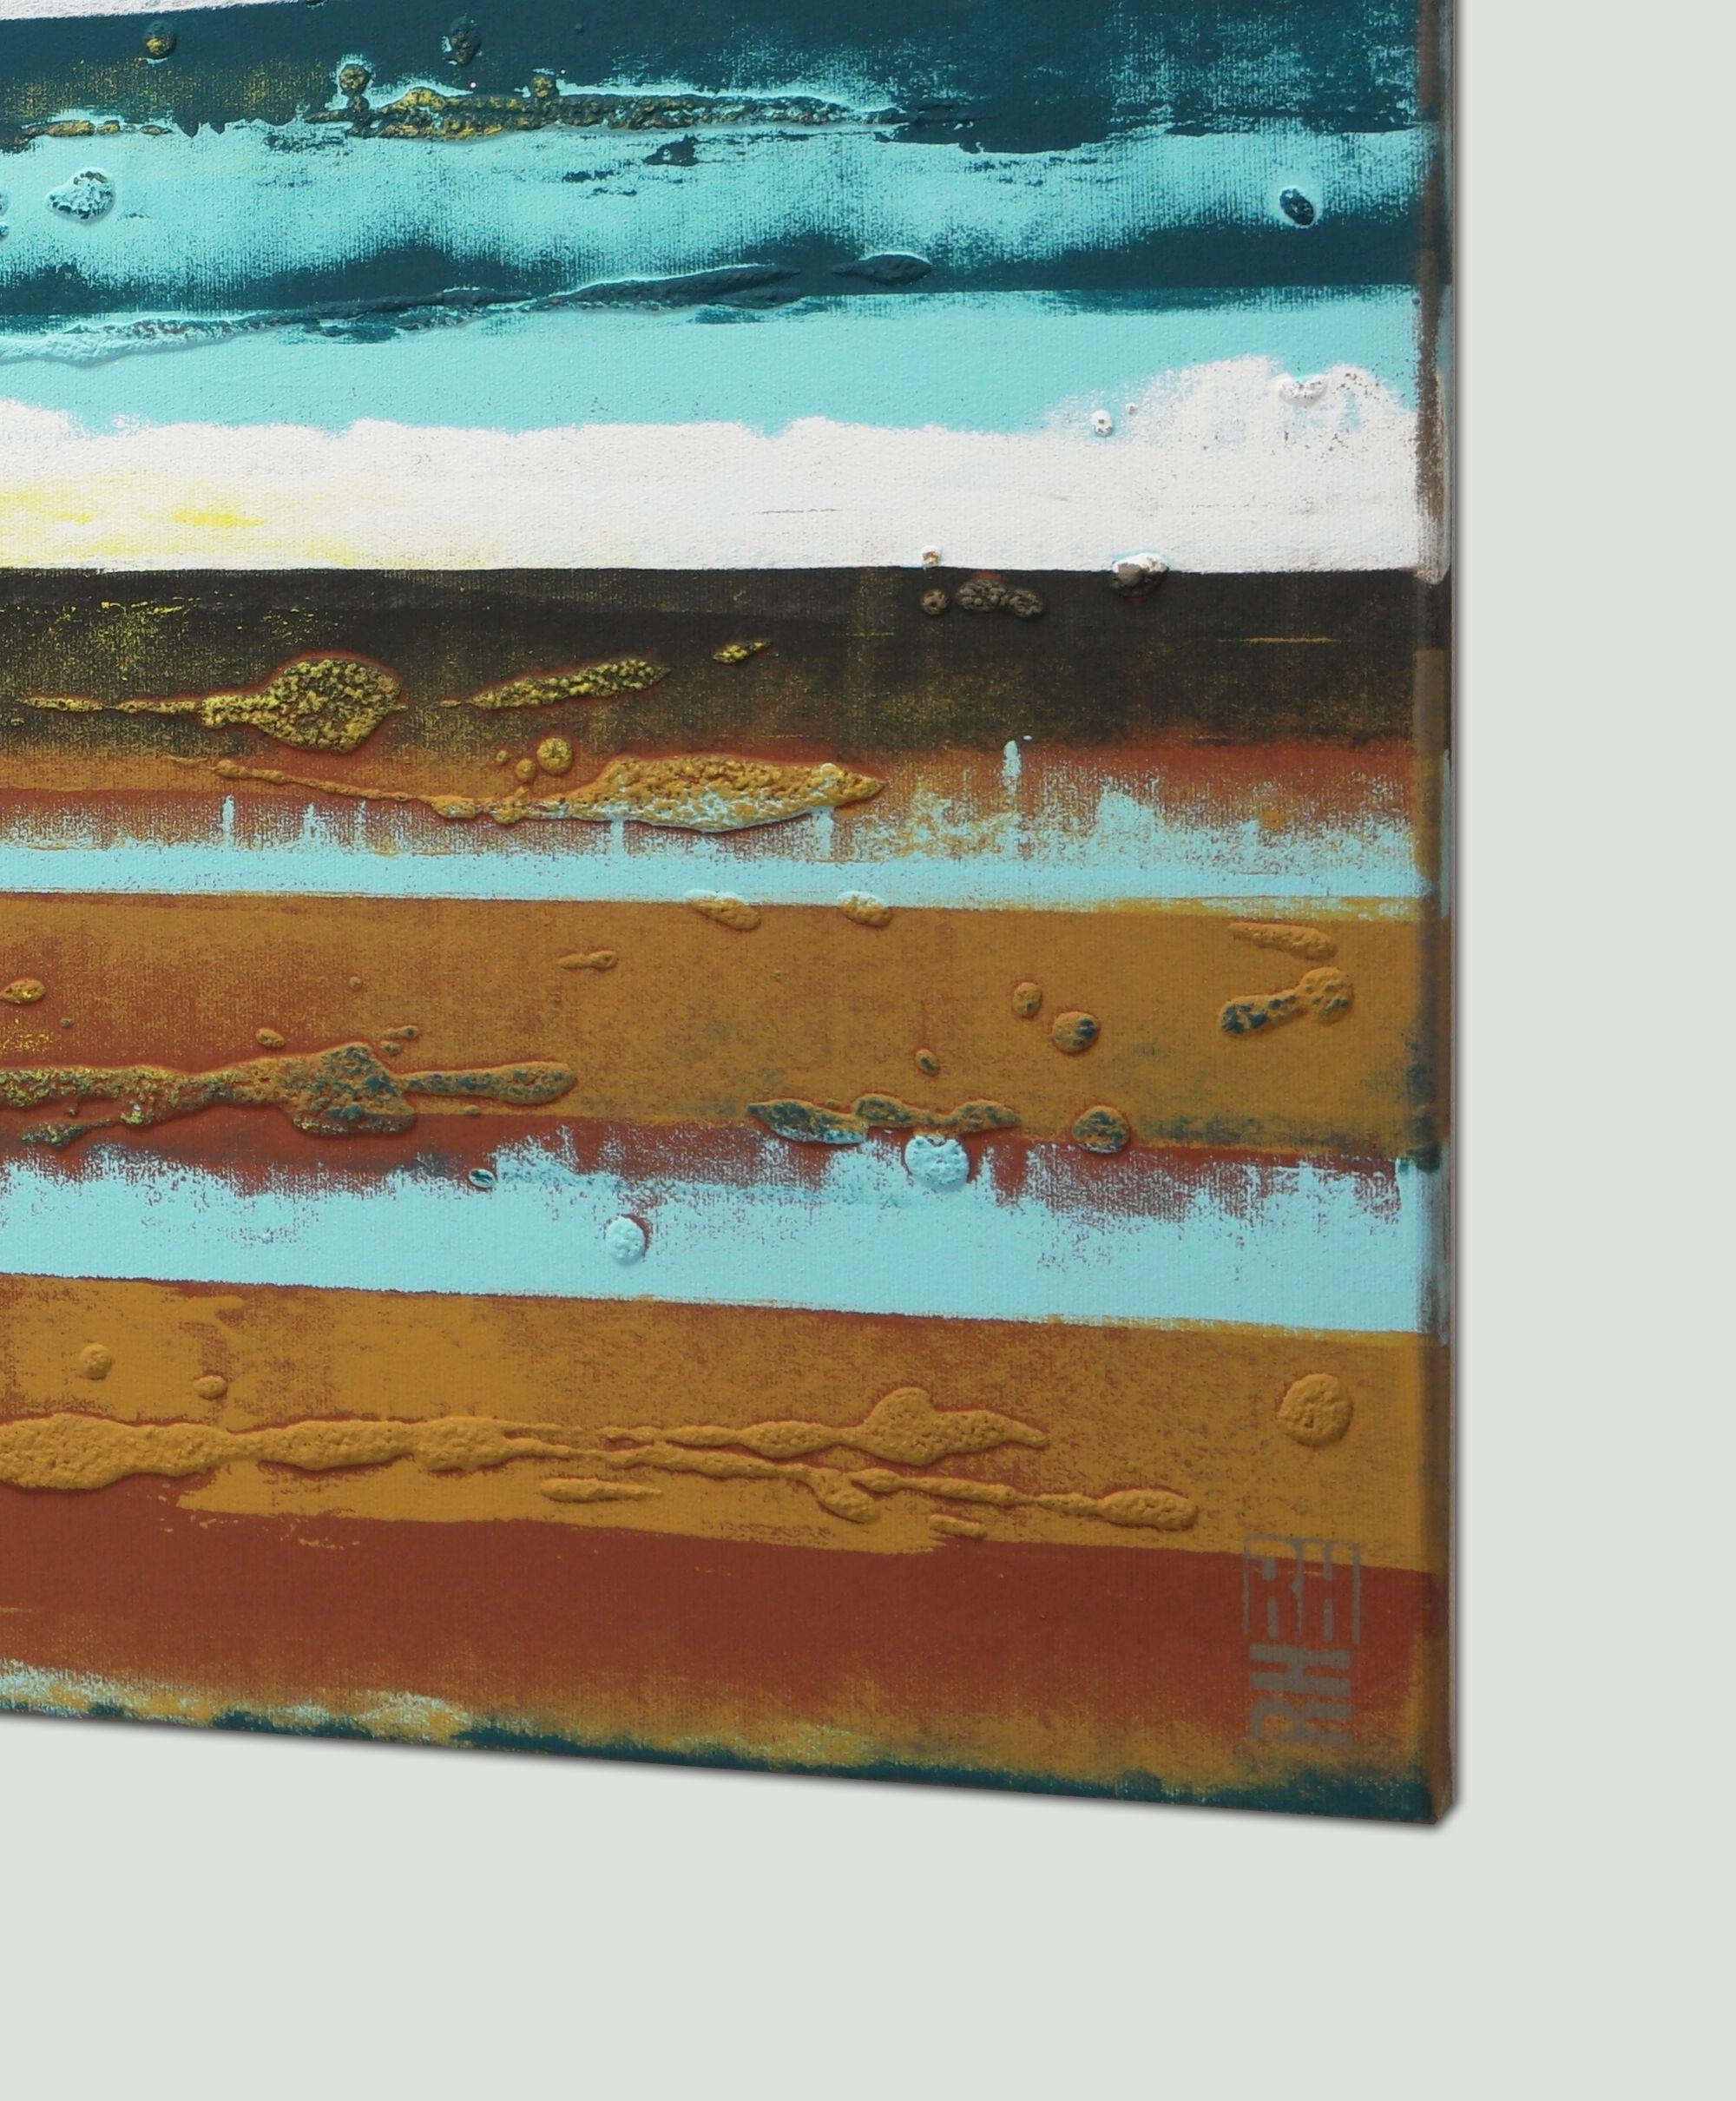 Une composition abstraite de tons bleus et bruns, rappelant un rivage. Grâce à de multiples couches de peinture et de texture, il cherche à créer un sentiment de profondeur - c'est pourquoi il y a toujours quelque chose de nouveau à découvrir dans